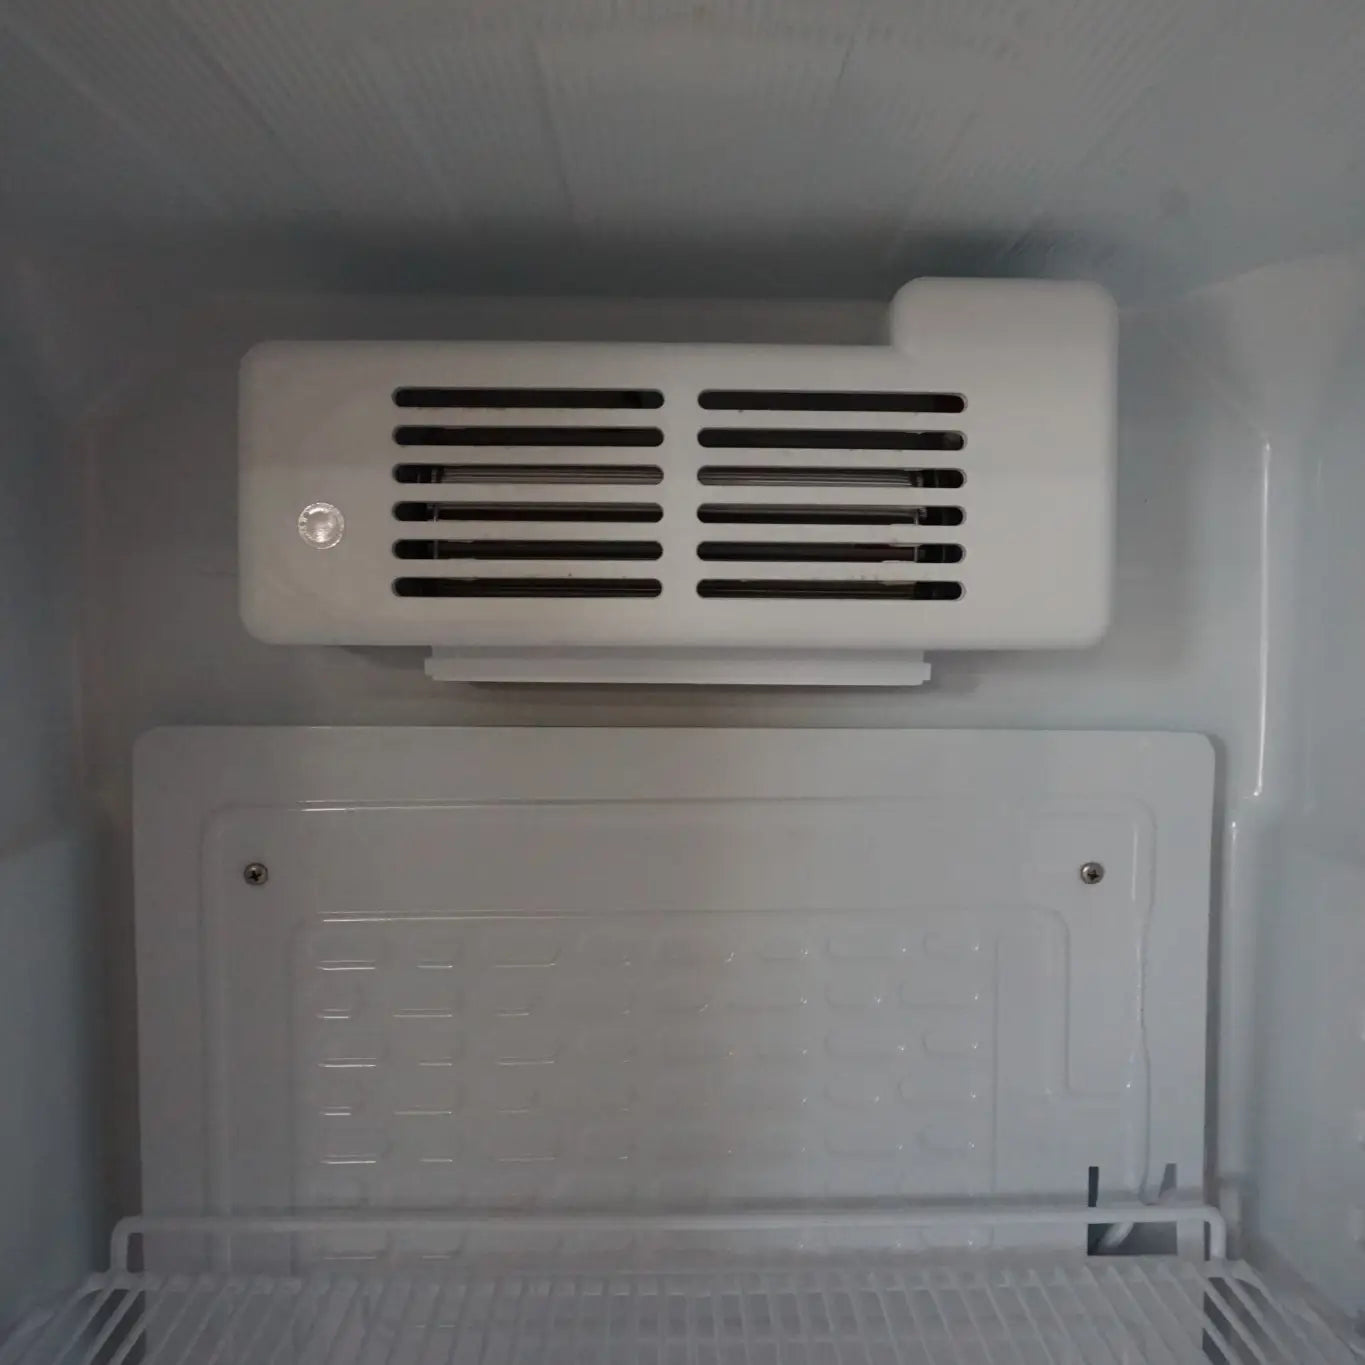 Vitrină frigorifică pentru băuturi, 60cm lățime, ventilație aer, panou comandă digital, iluminare LED, 4 rafturi incluse